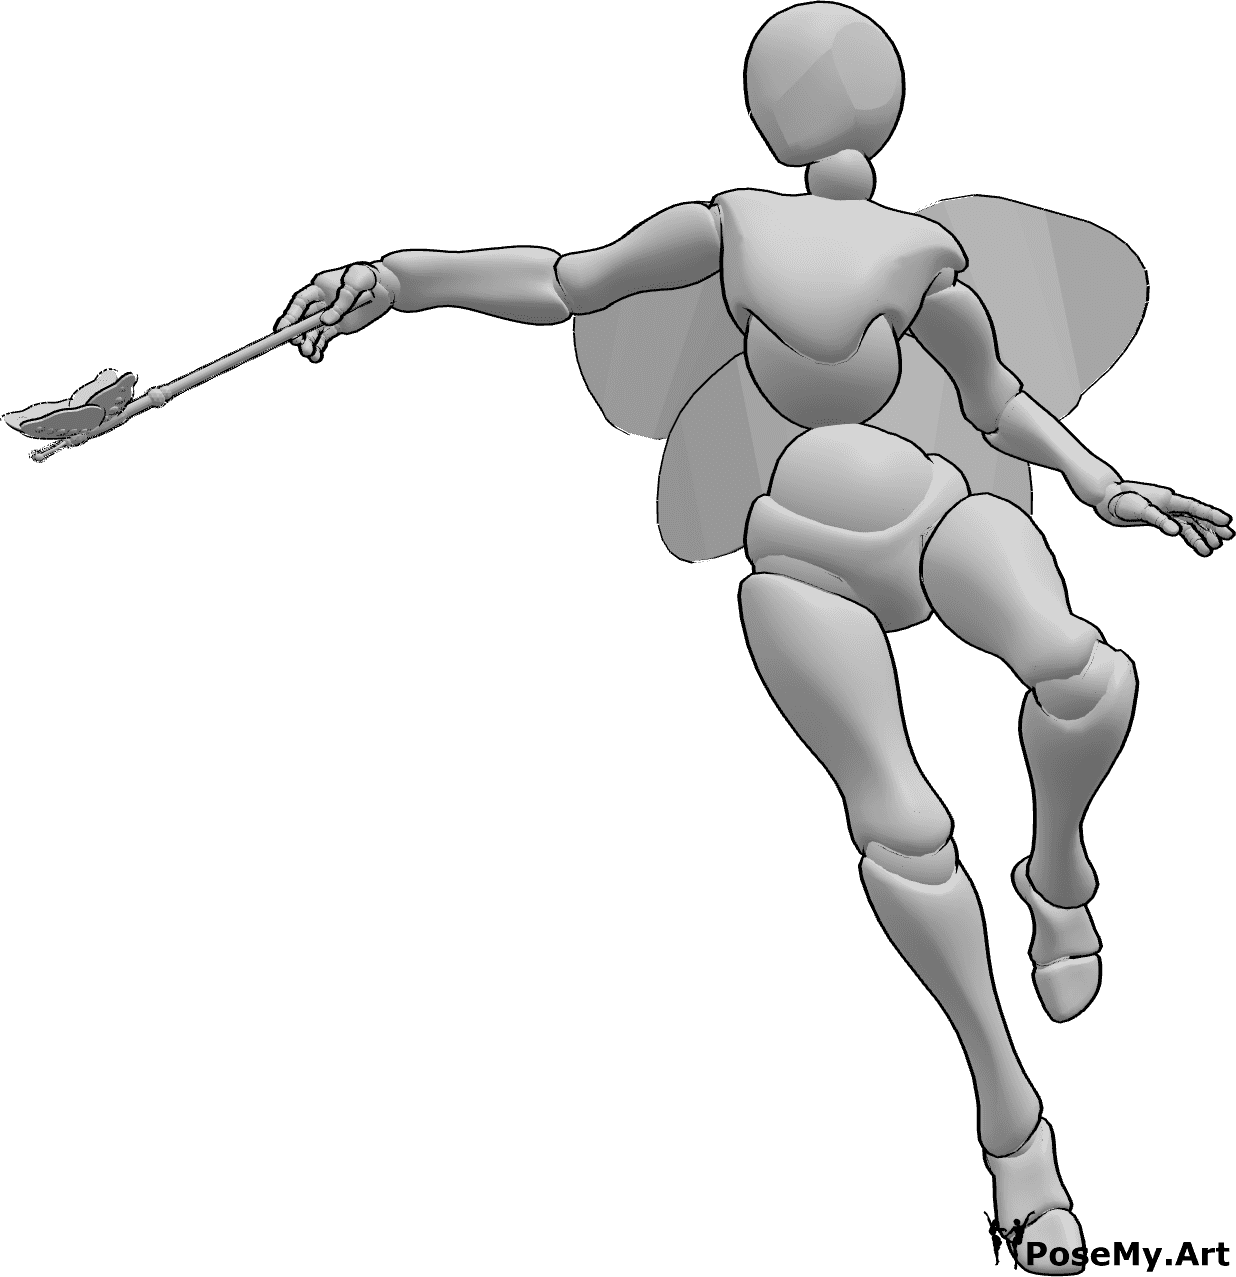 Referencia de poses- Postura mágica de hada - Hada volando y lanzando un hechizo con su varita mágica en la mano derecha.